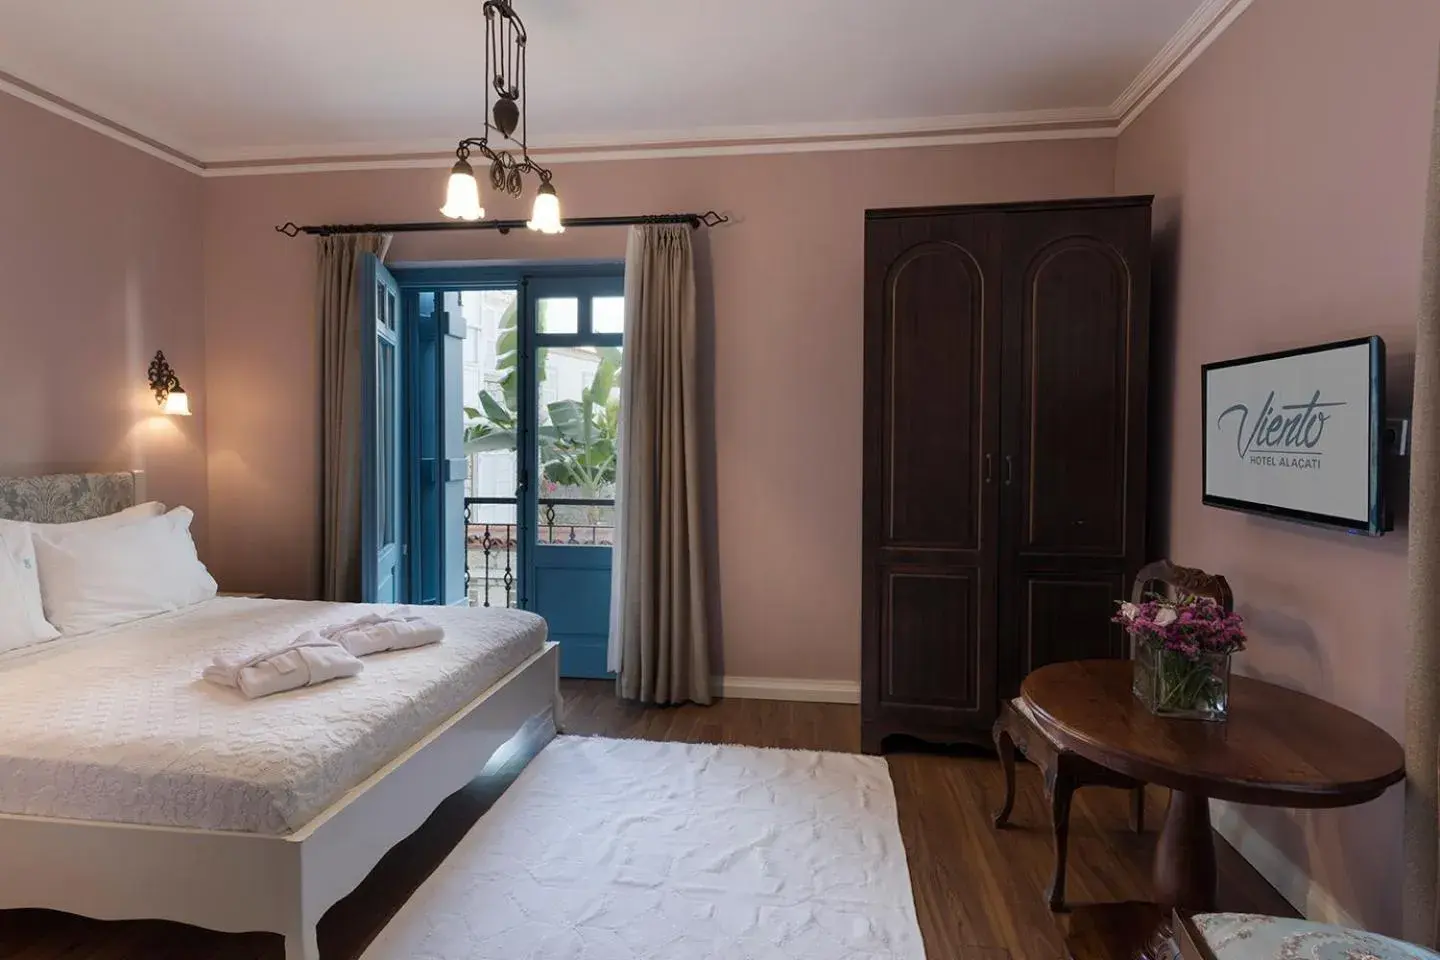 Bedroom in Viento Alacati Hotel